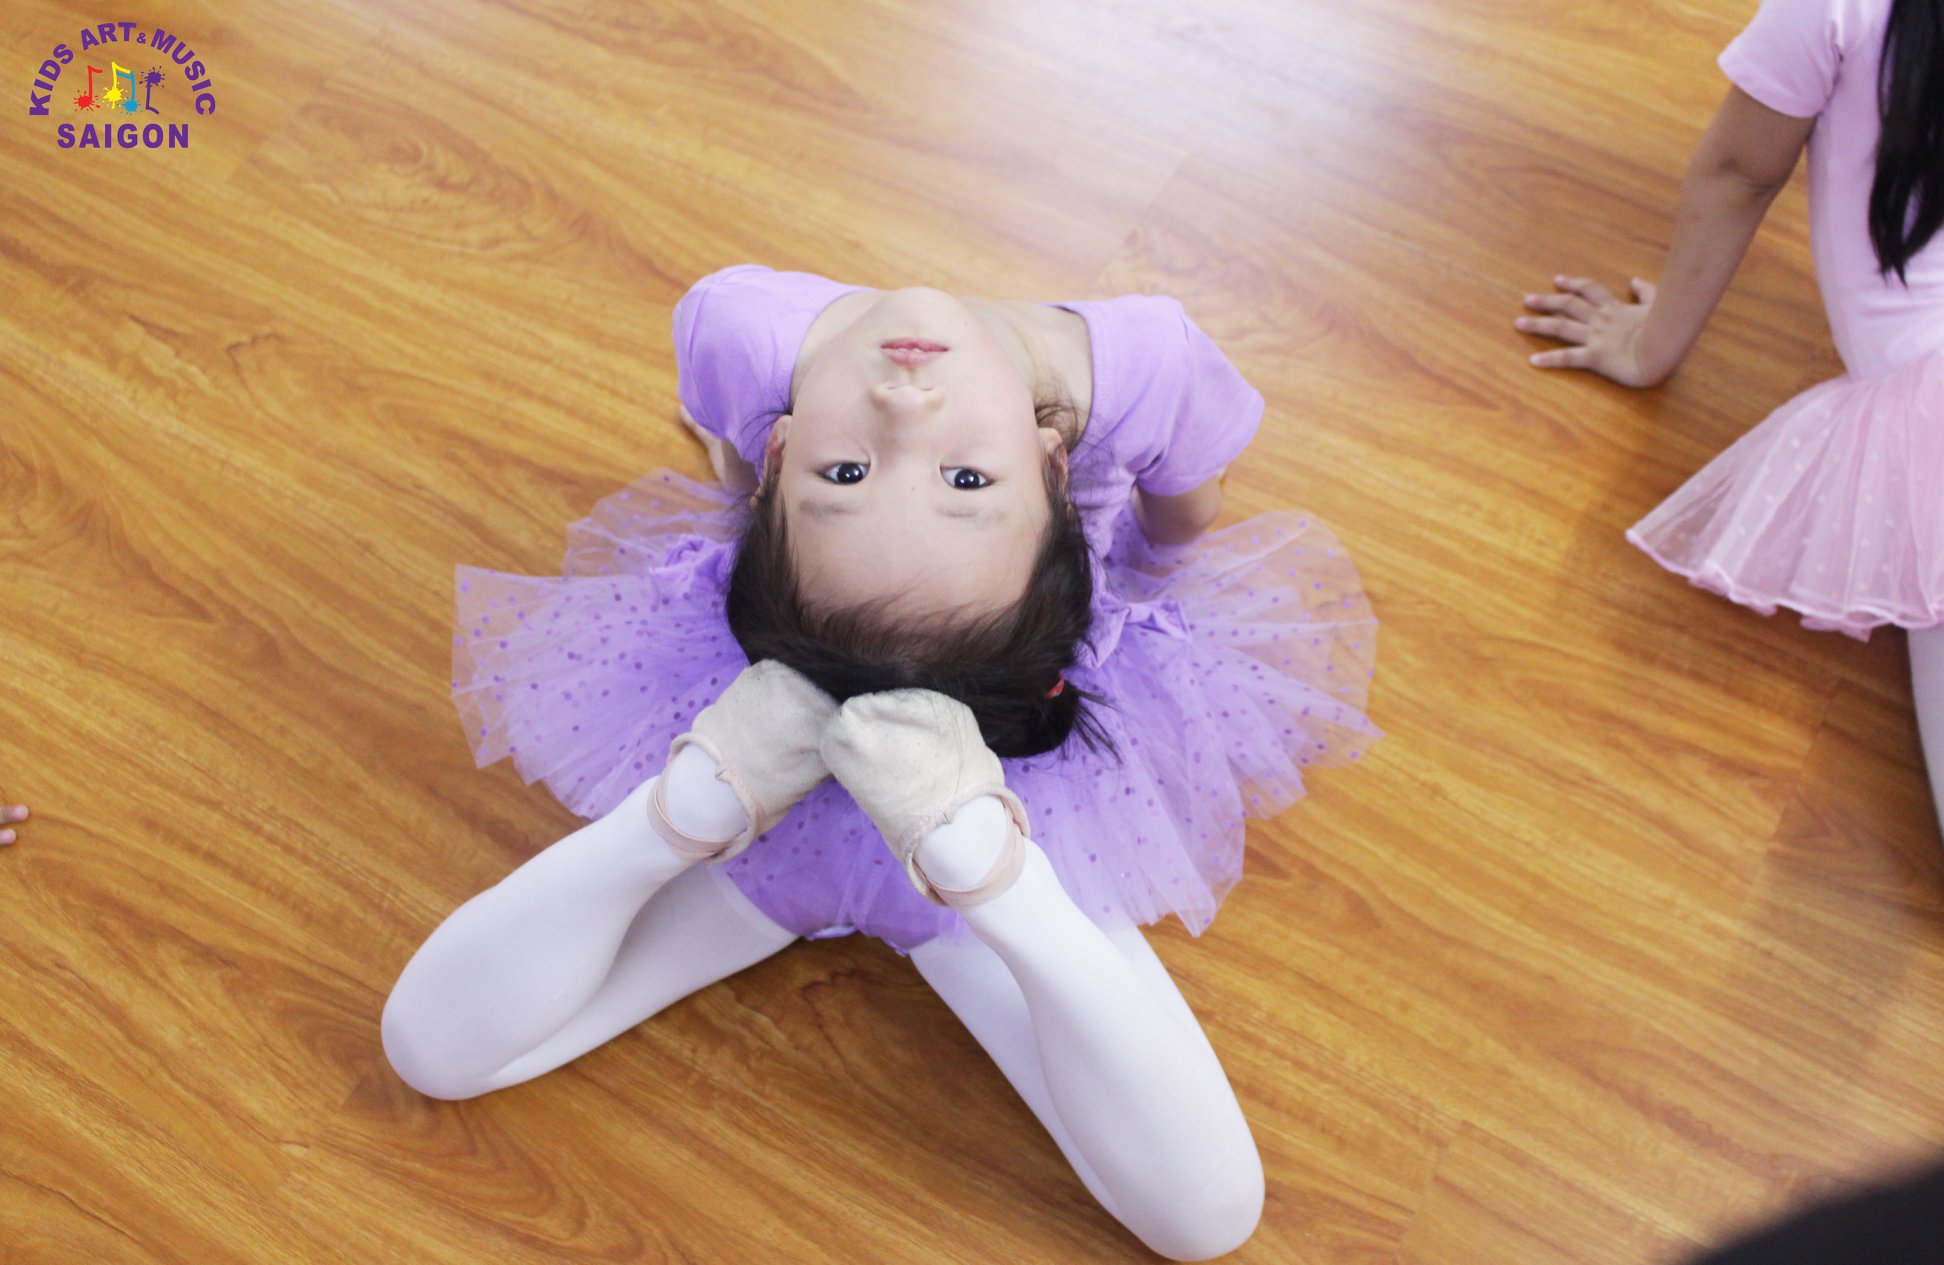 Lịch sử giá Váy múa ballet dùng cho bé gái từ 2 tới 8 tuổi cập nhật 3/2024  - Mua Thông Minh